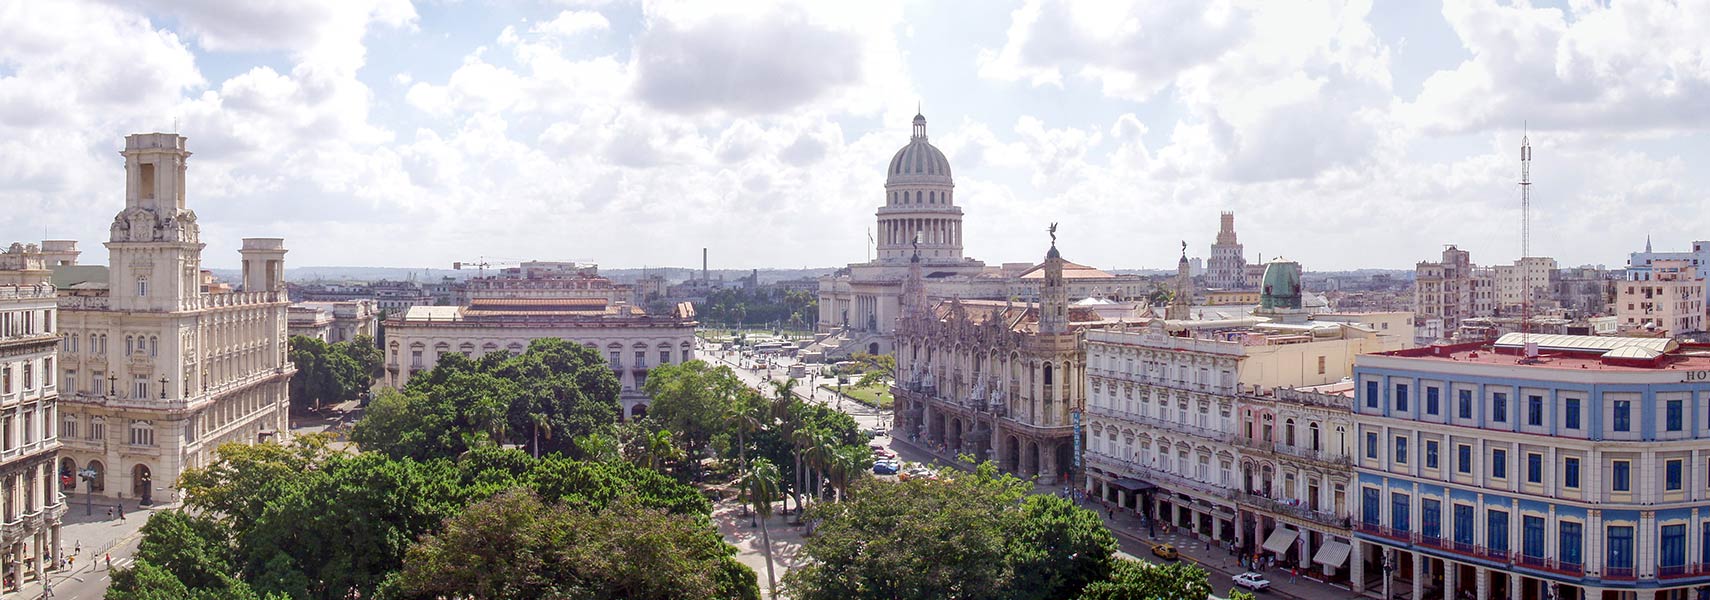 Old Havana with El Capitolio, Cuba